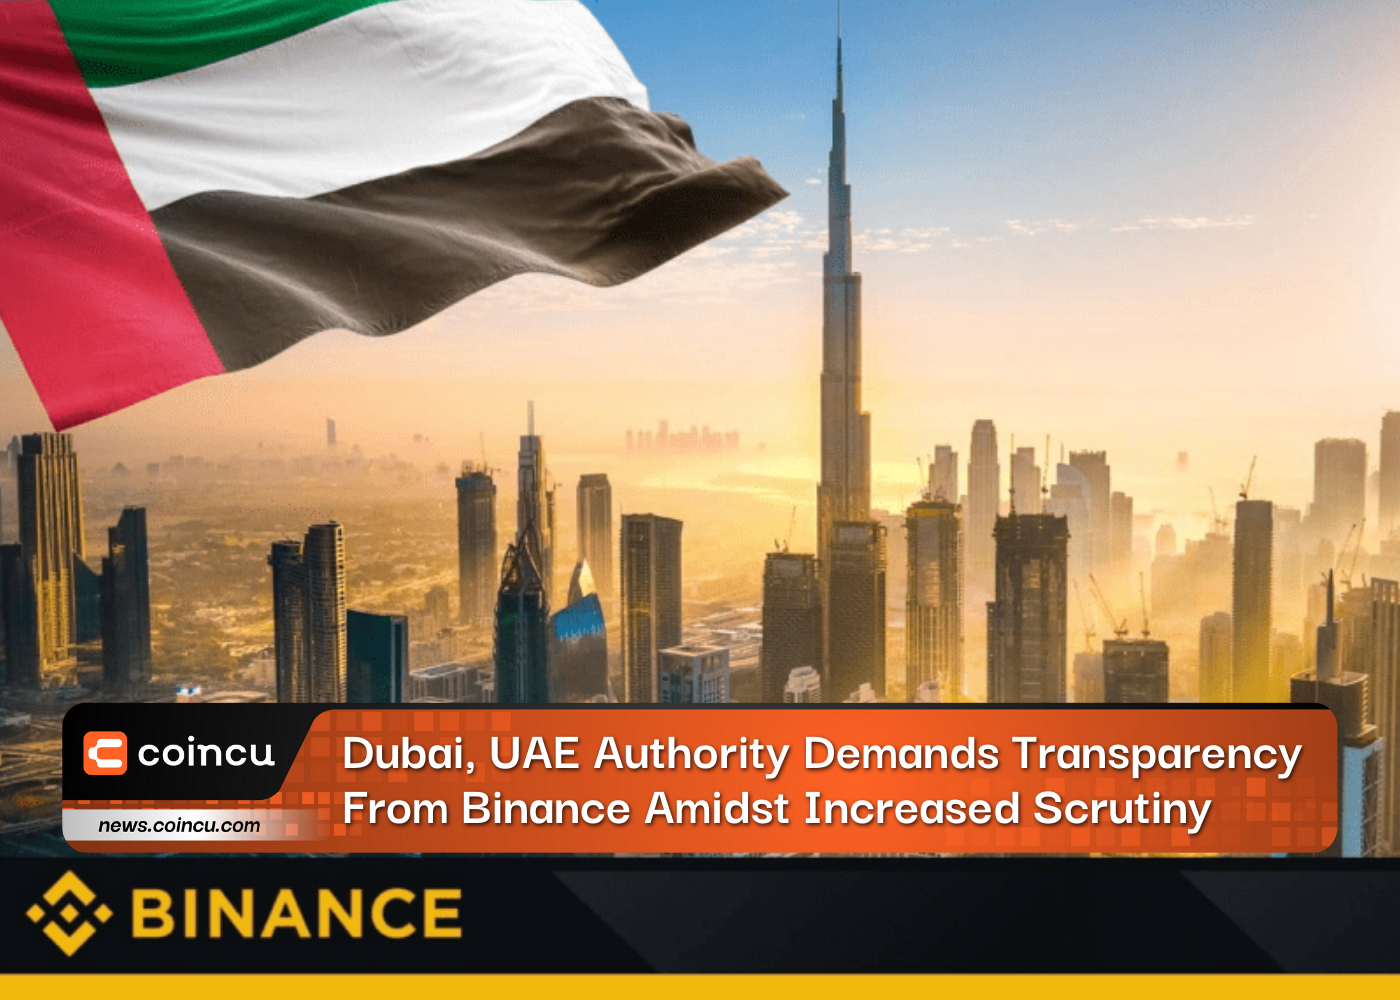 Autoridade de Dubai e Emirados Árabes Unidos exige transparência da Binance em meio a maior escrutínio